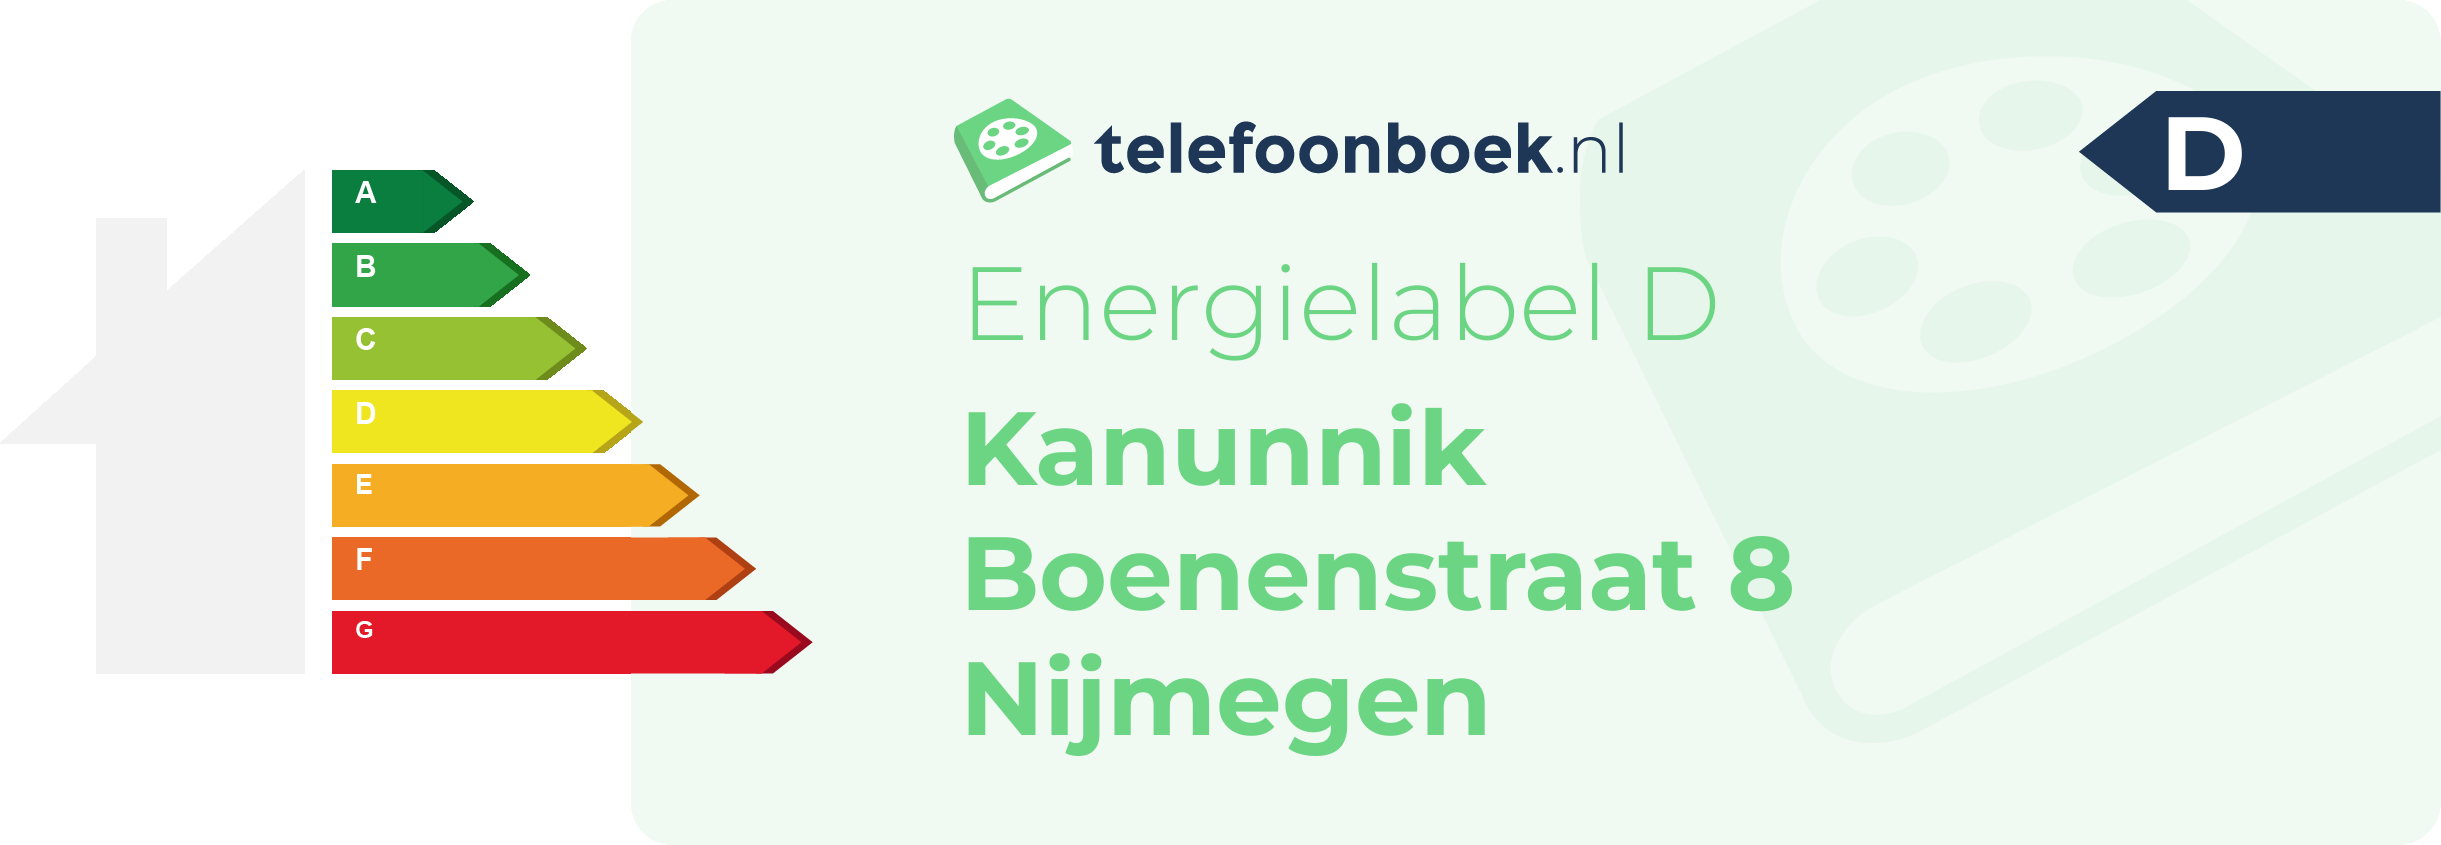 Energielabel Kanunnik Boenenstraat 8 Nijmegen